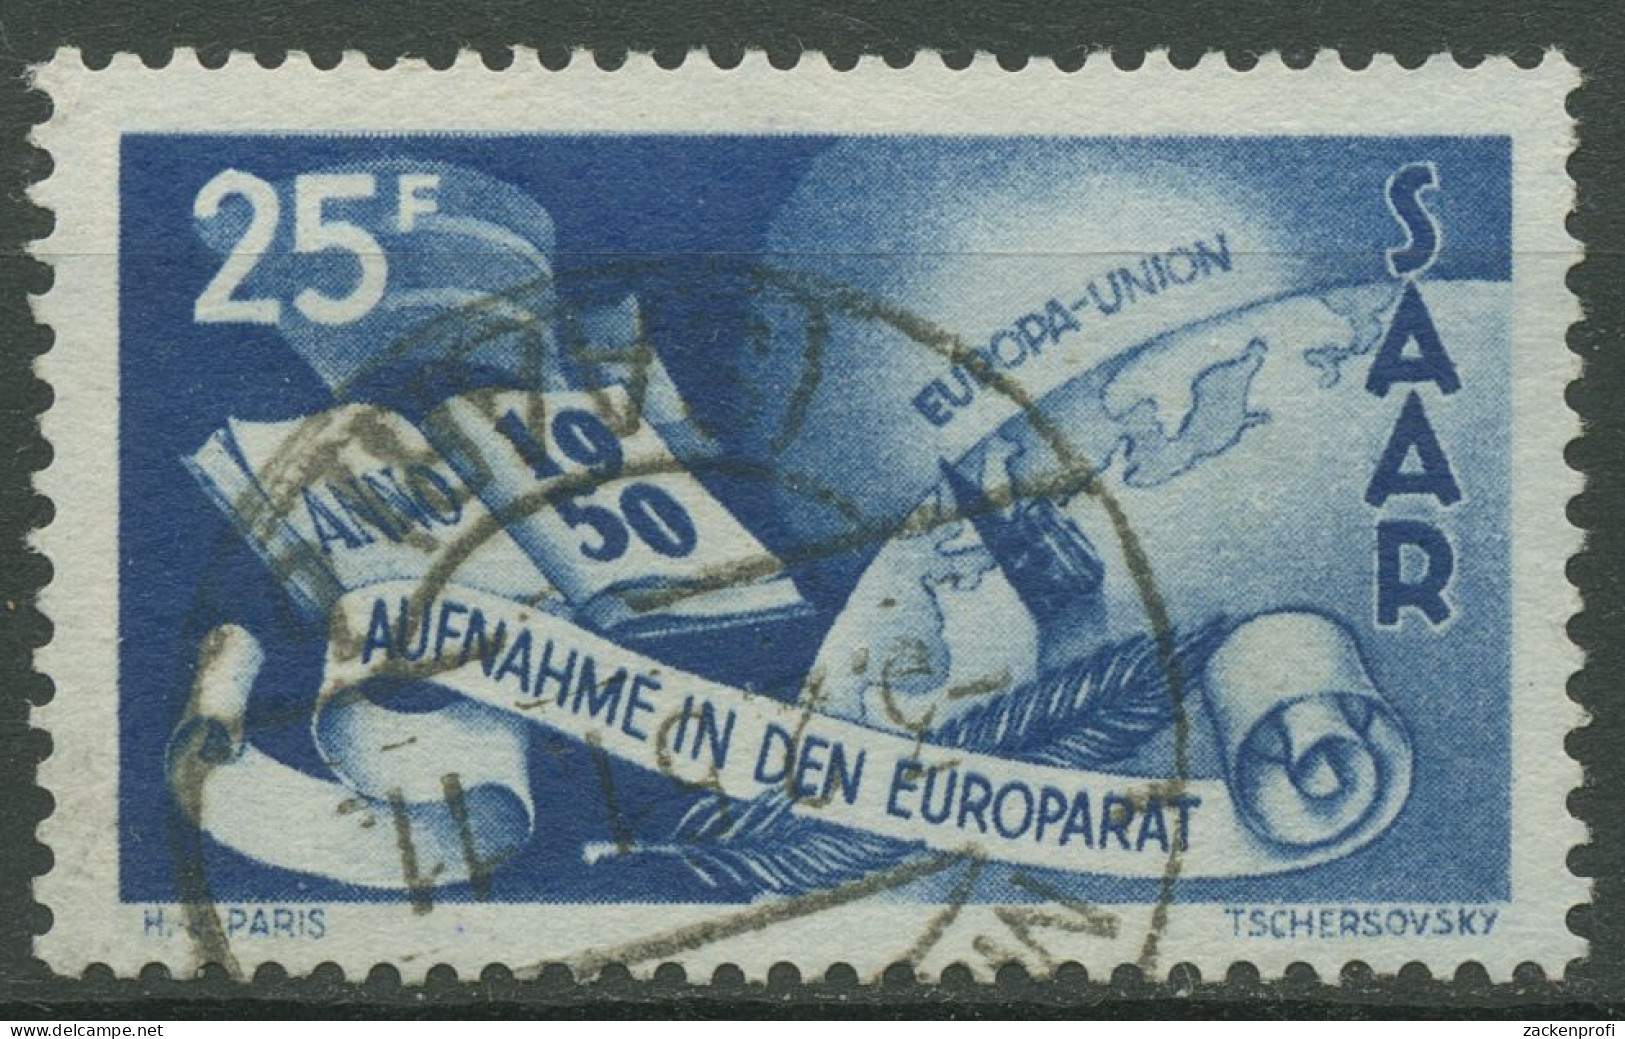 Saarland 1950 Aufnahme Des Saarlandes In Den Europarat 297 Gestempelt - Used Stamps